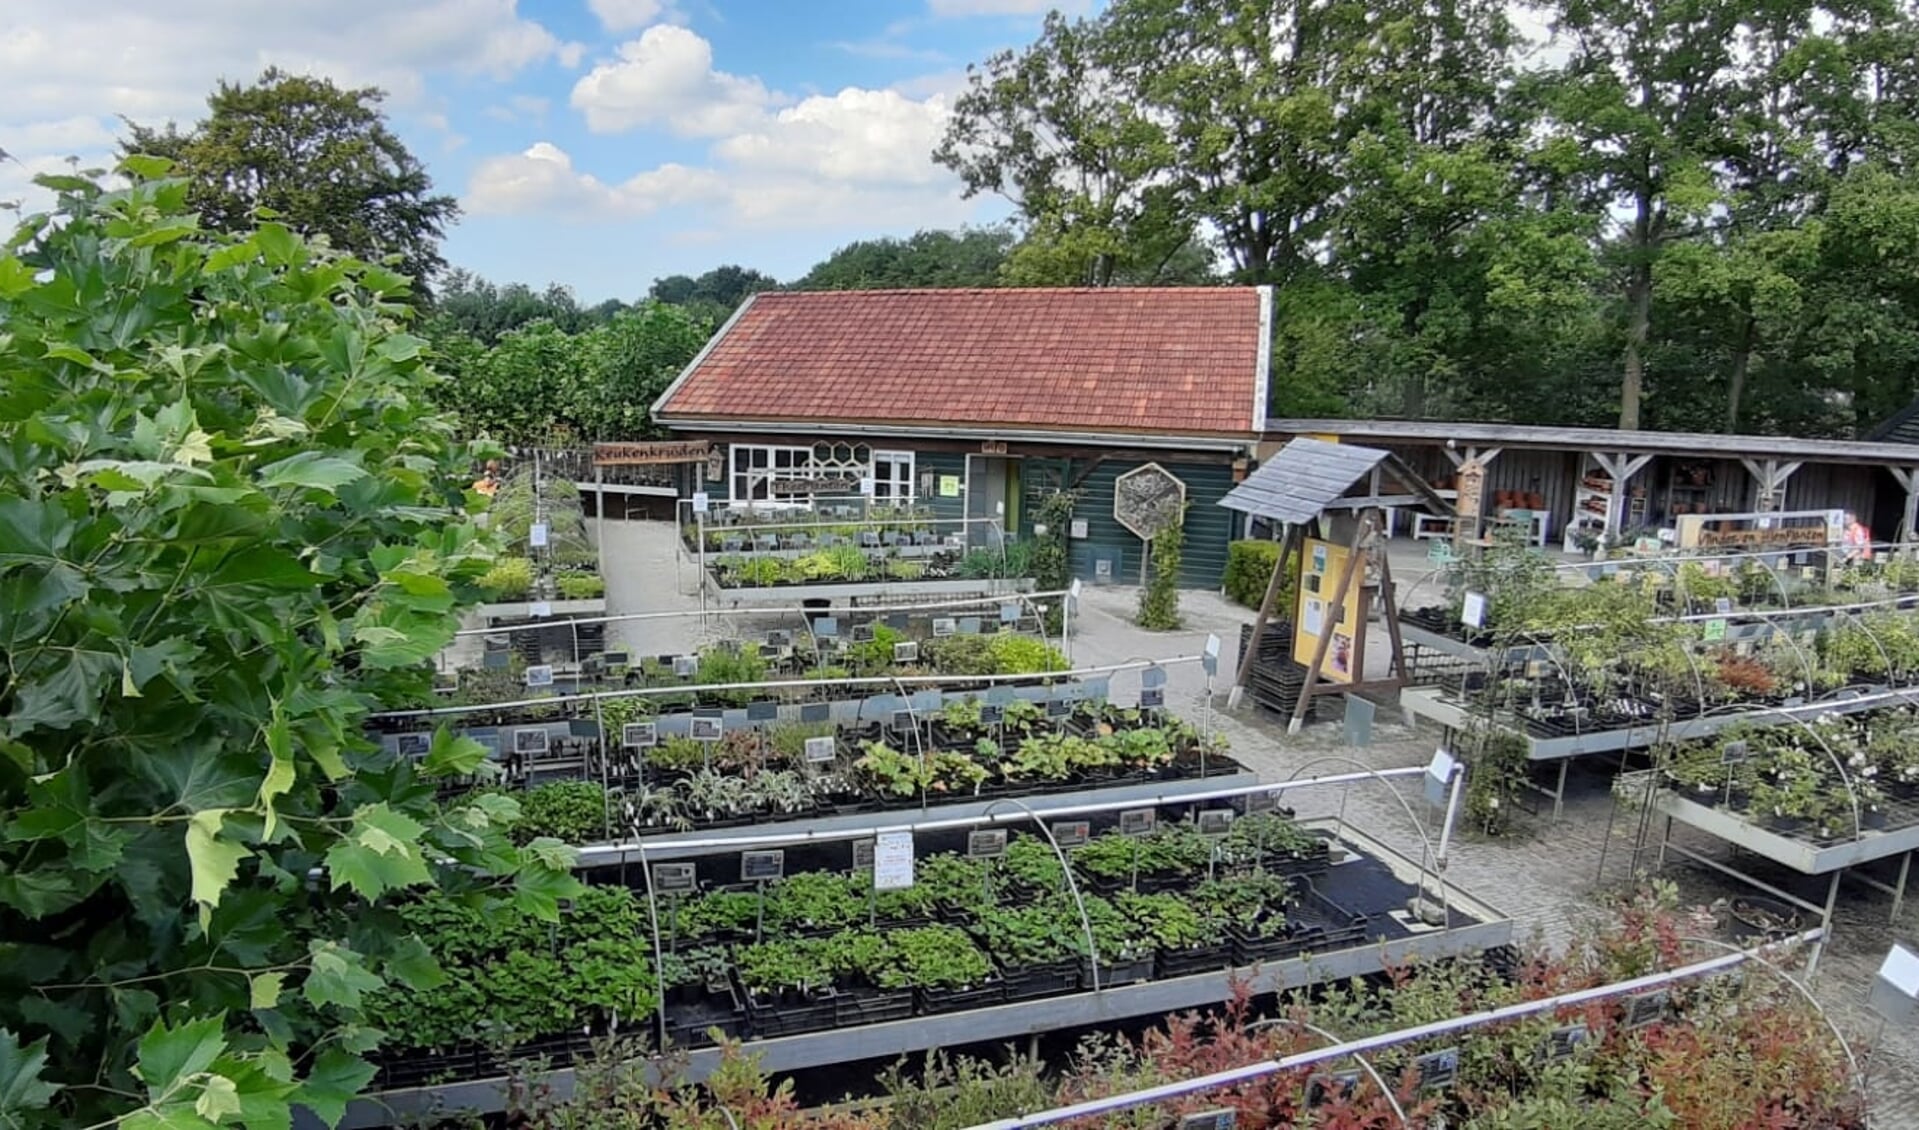 De Kruidhof heeft een kortingsactie op alle planten, kruiden, struiken en fruitbomen. 